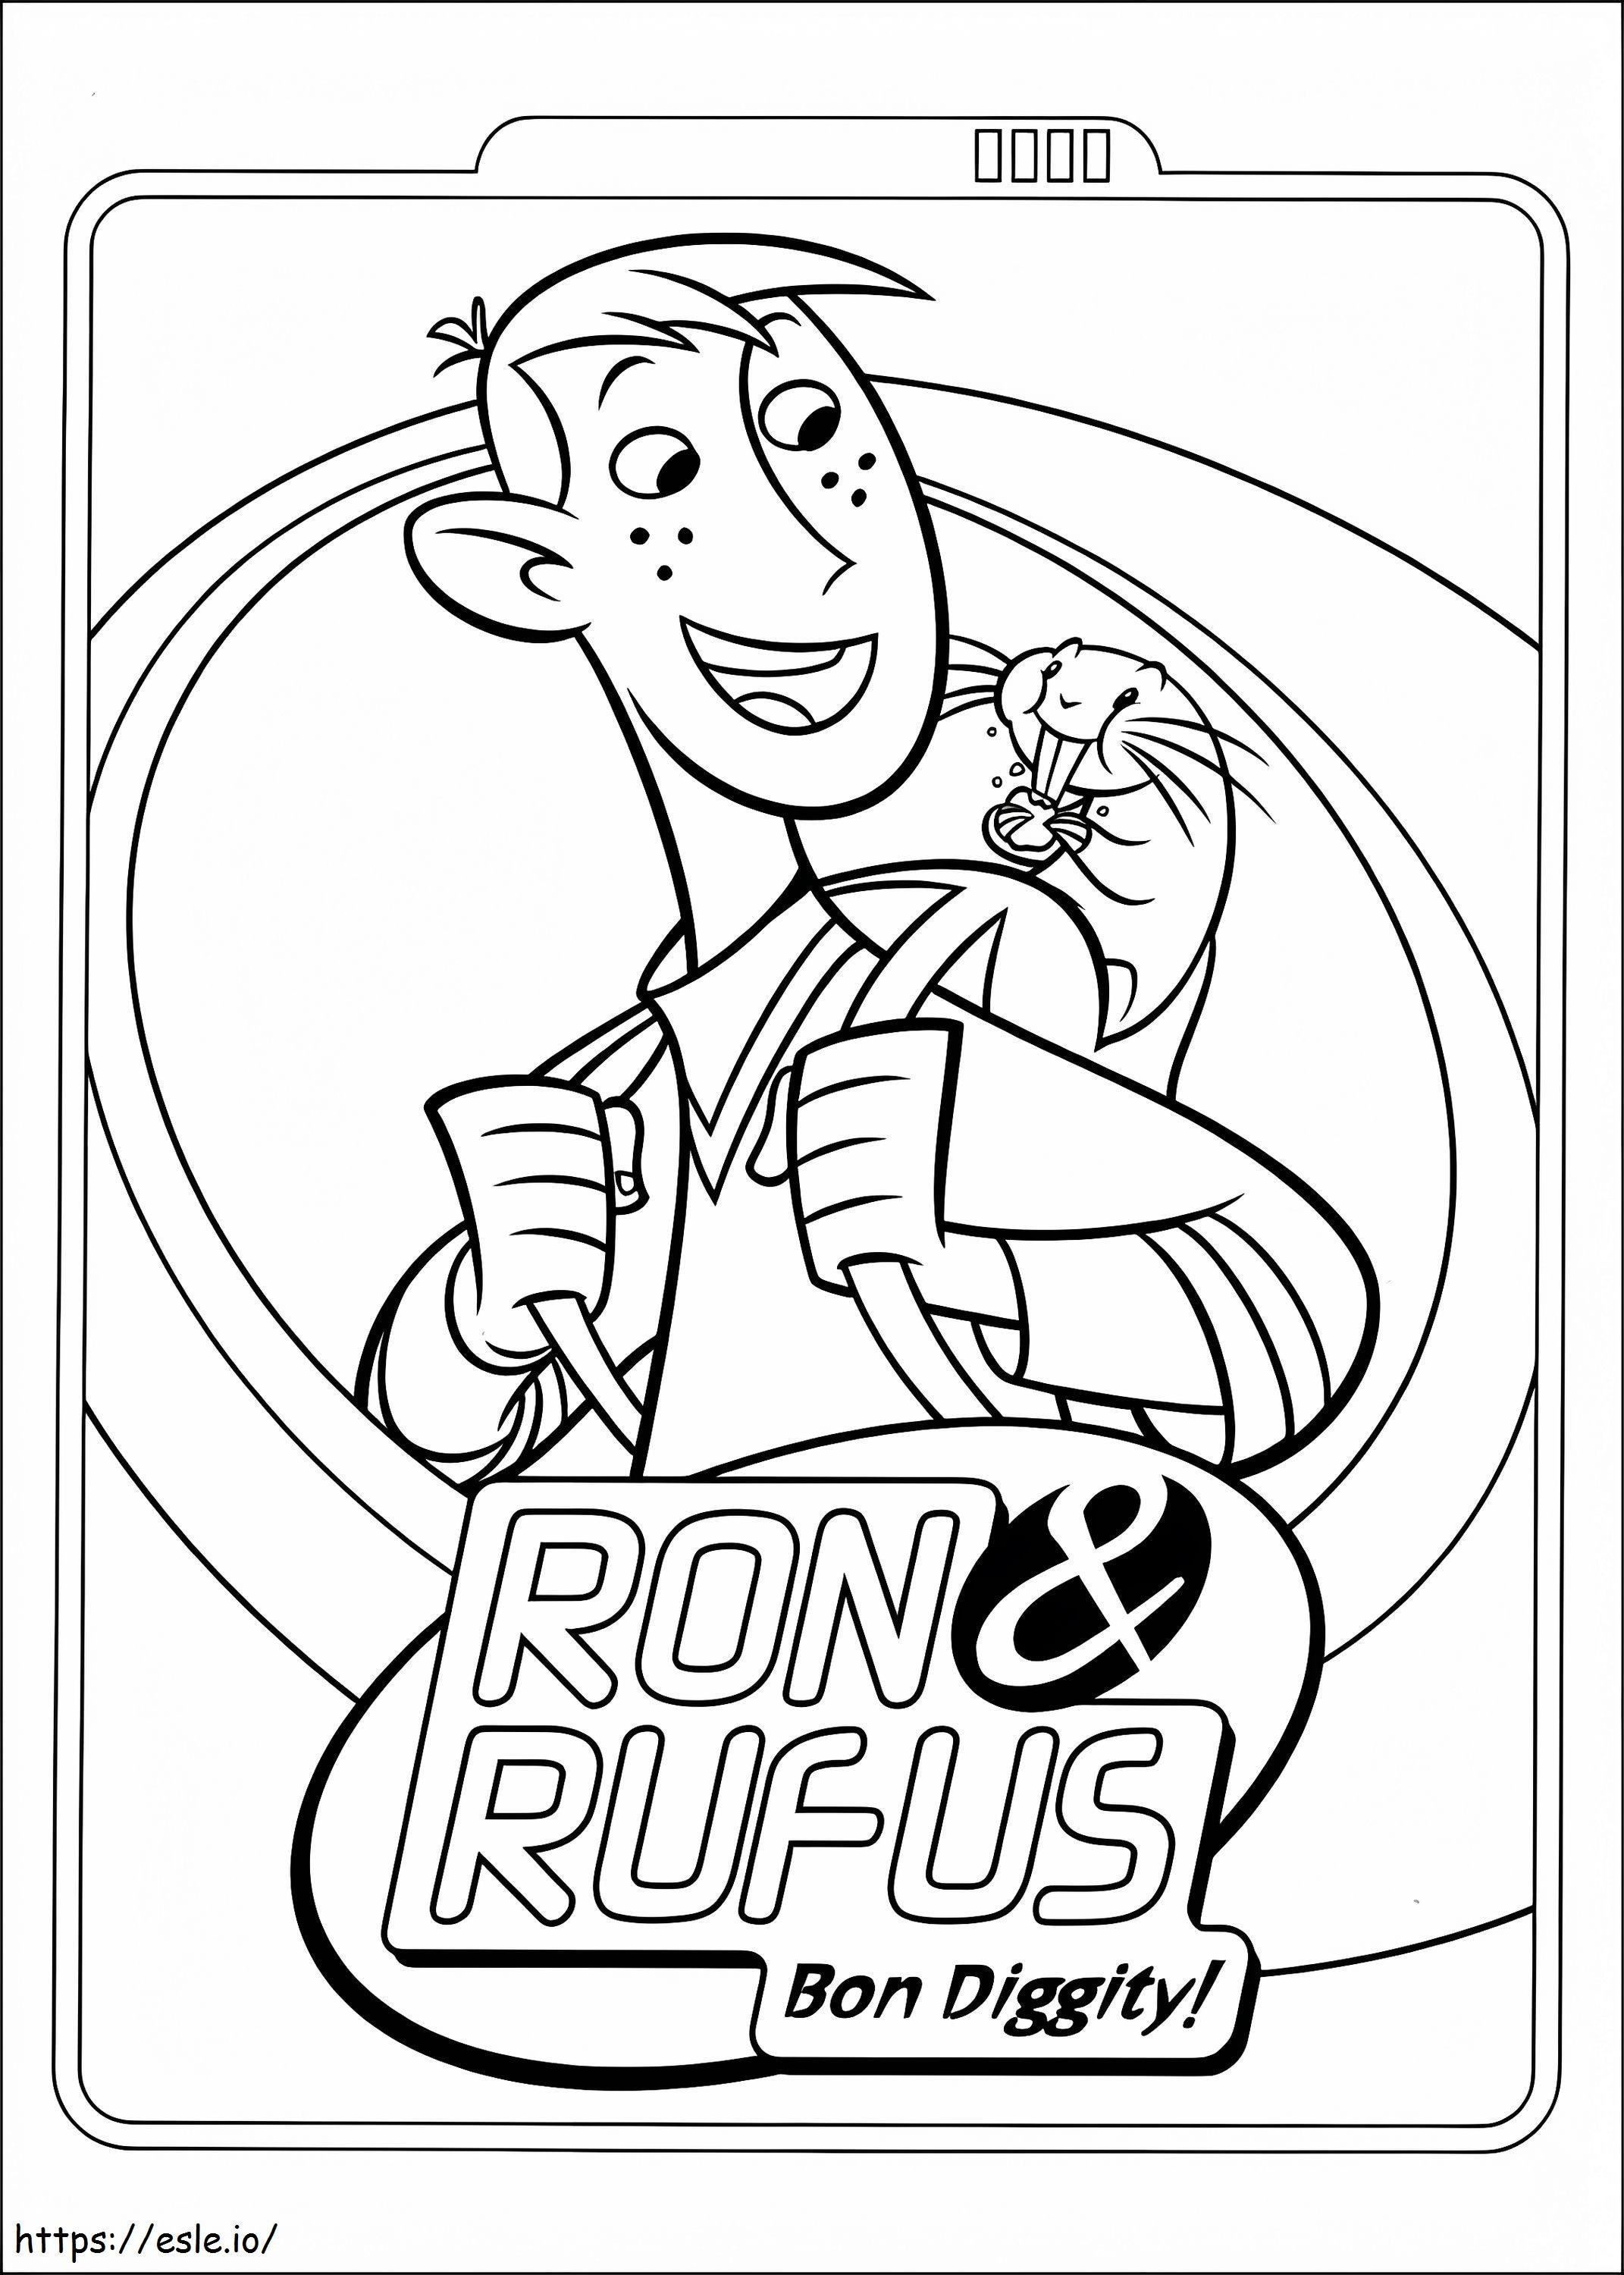  Ron y Rufus A4 para colorear